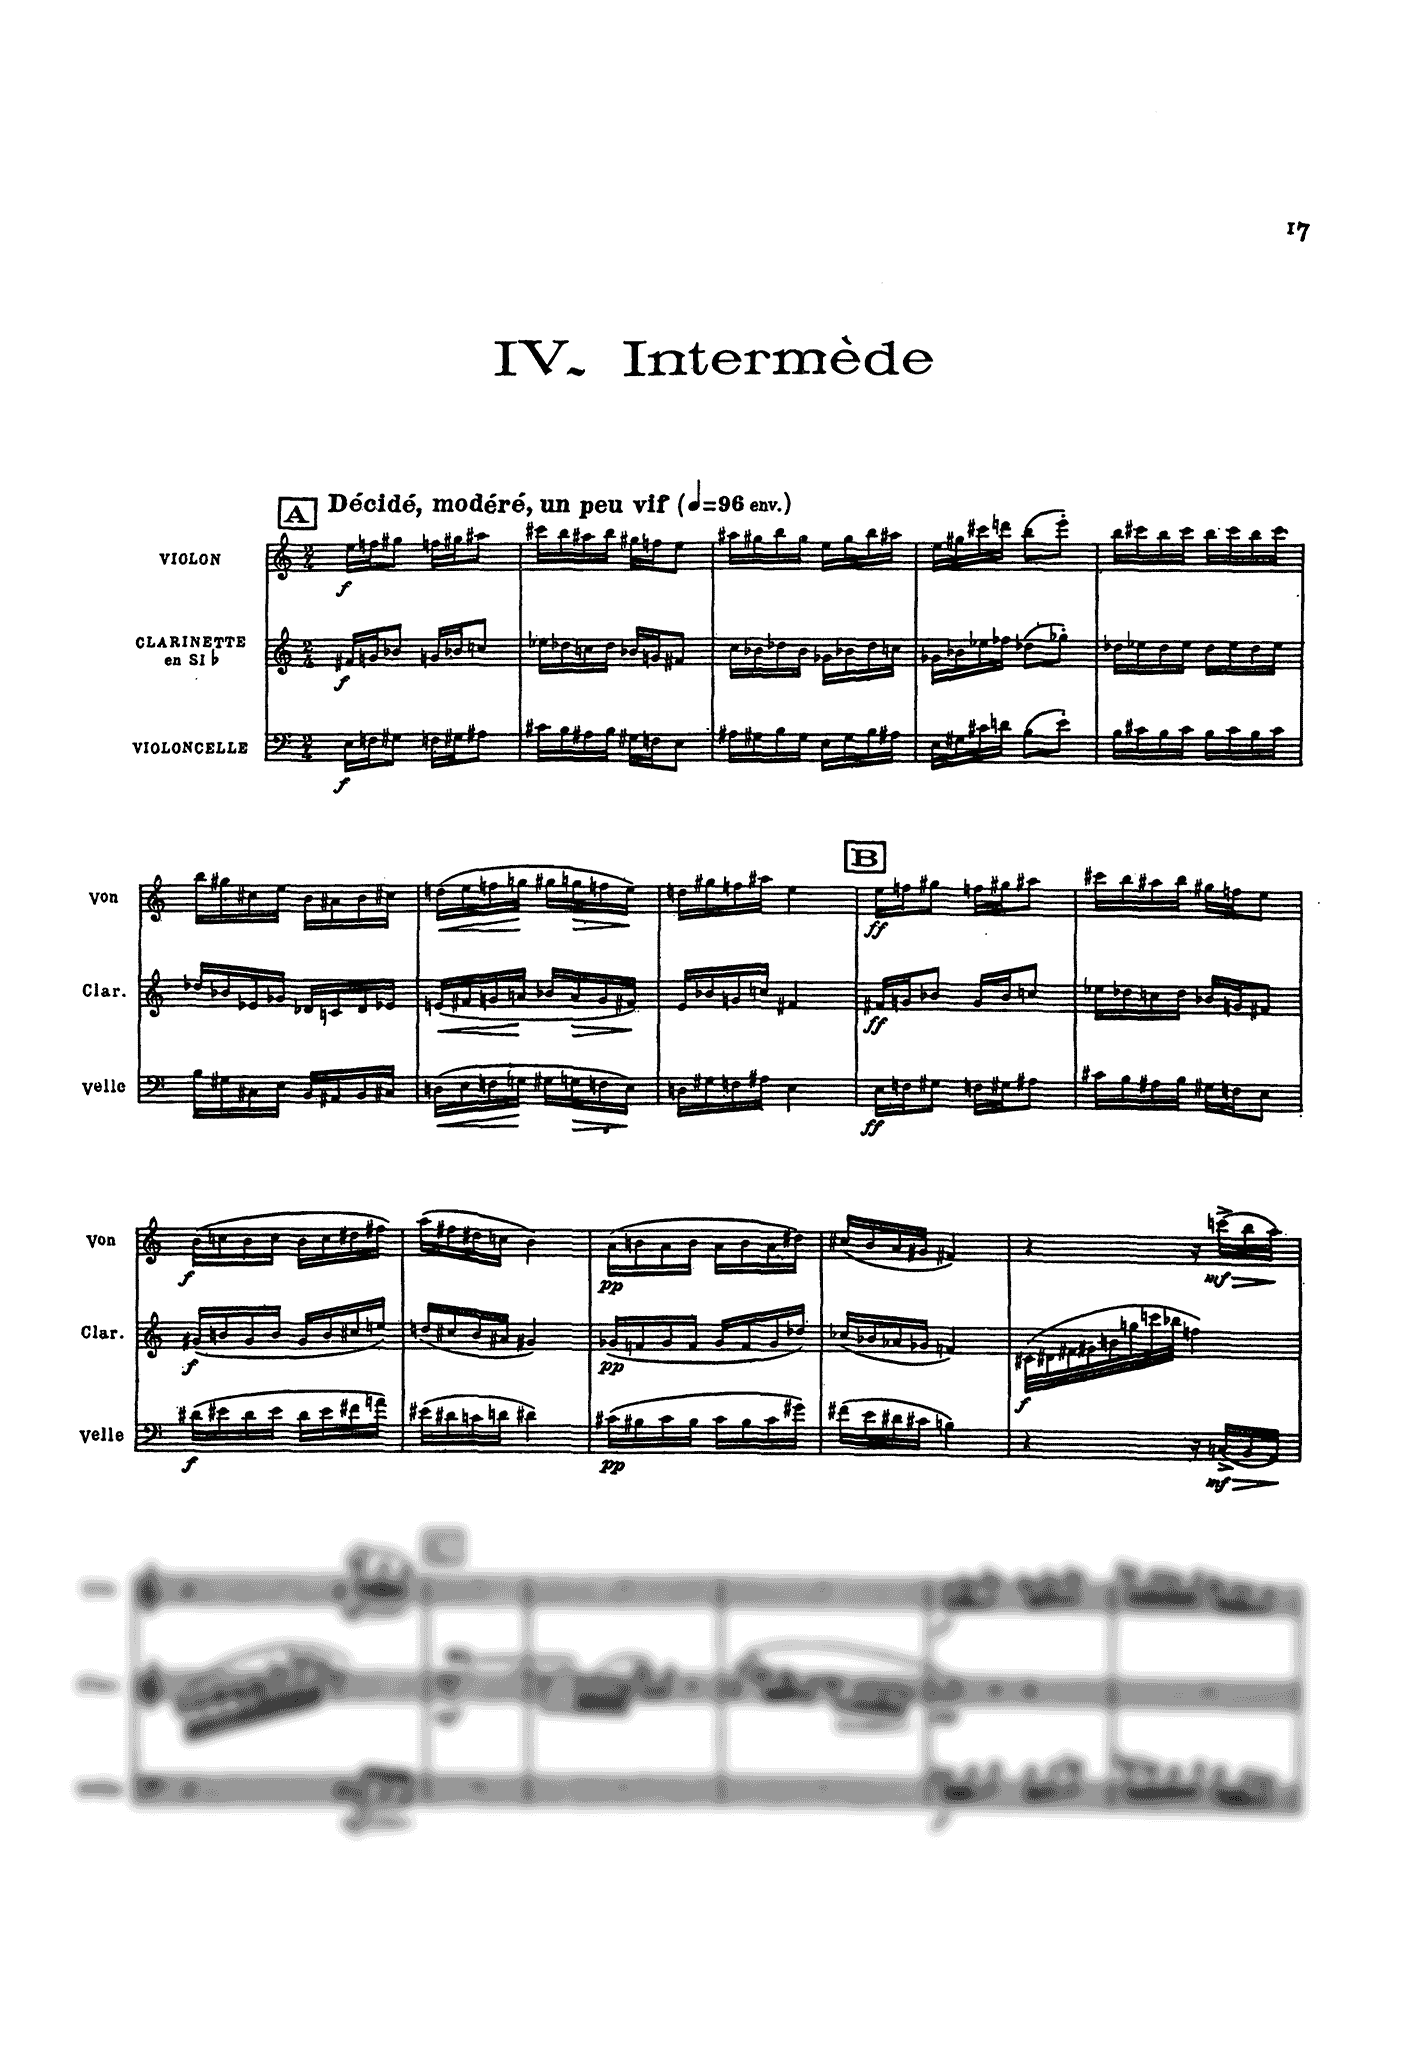 Messiaen Quatuor pour la fin du temps mini score - Movement 4